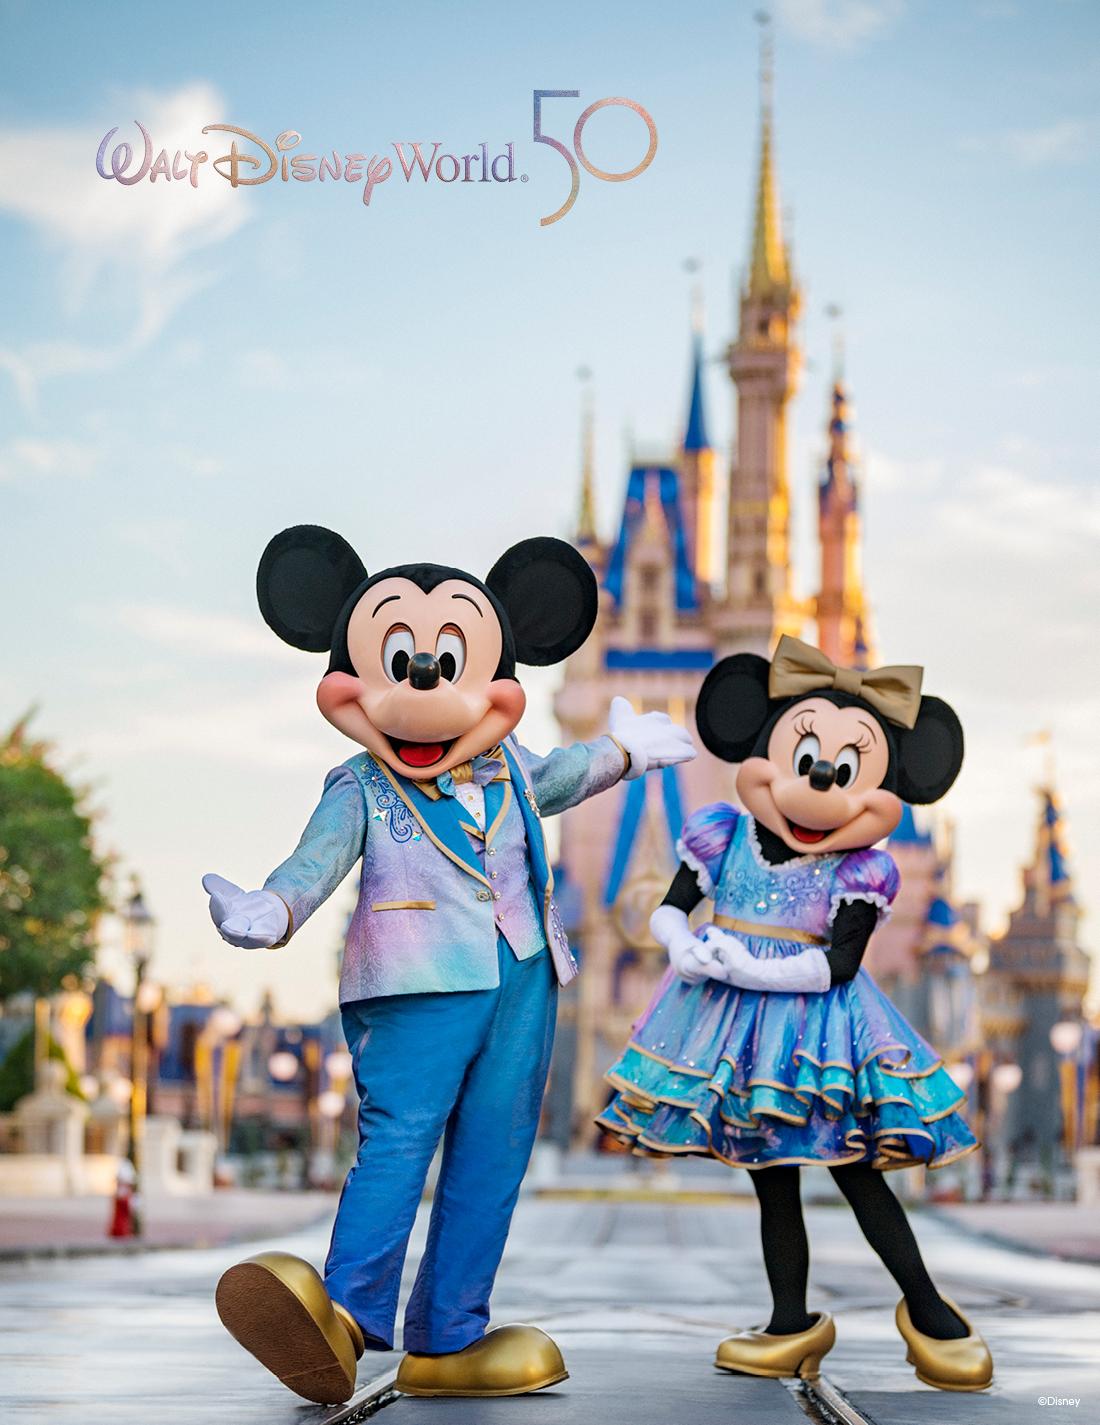 Walt Disney World Resort - background banner